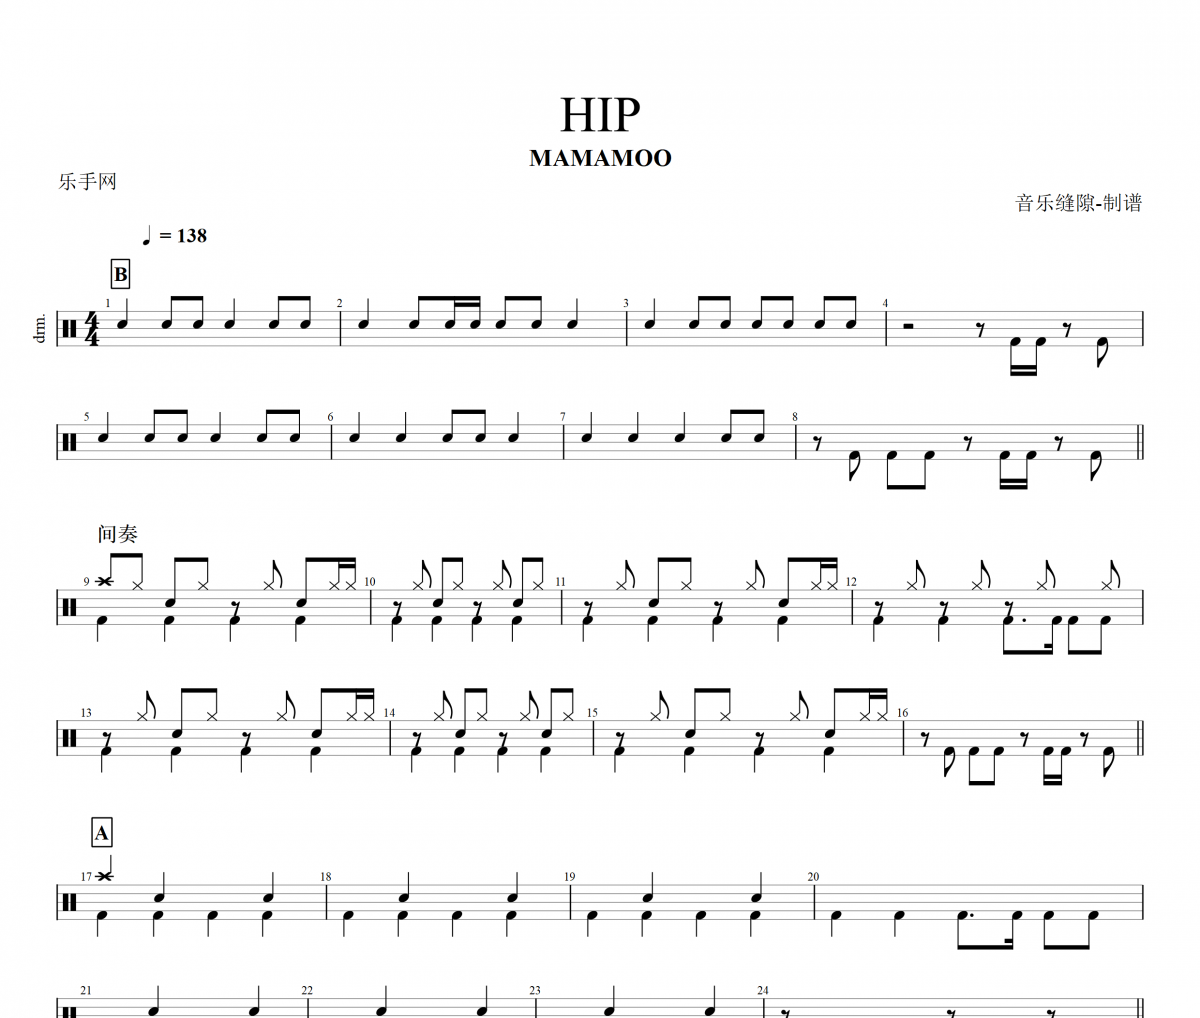 HIP鼓谱 MAMAMOO-HIP架子鼓谱+动态鼓谱